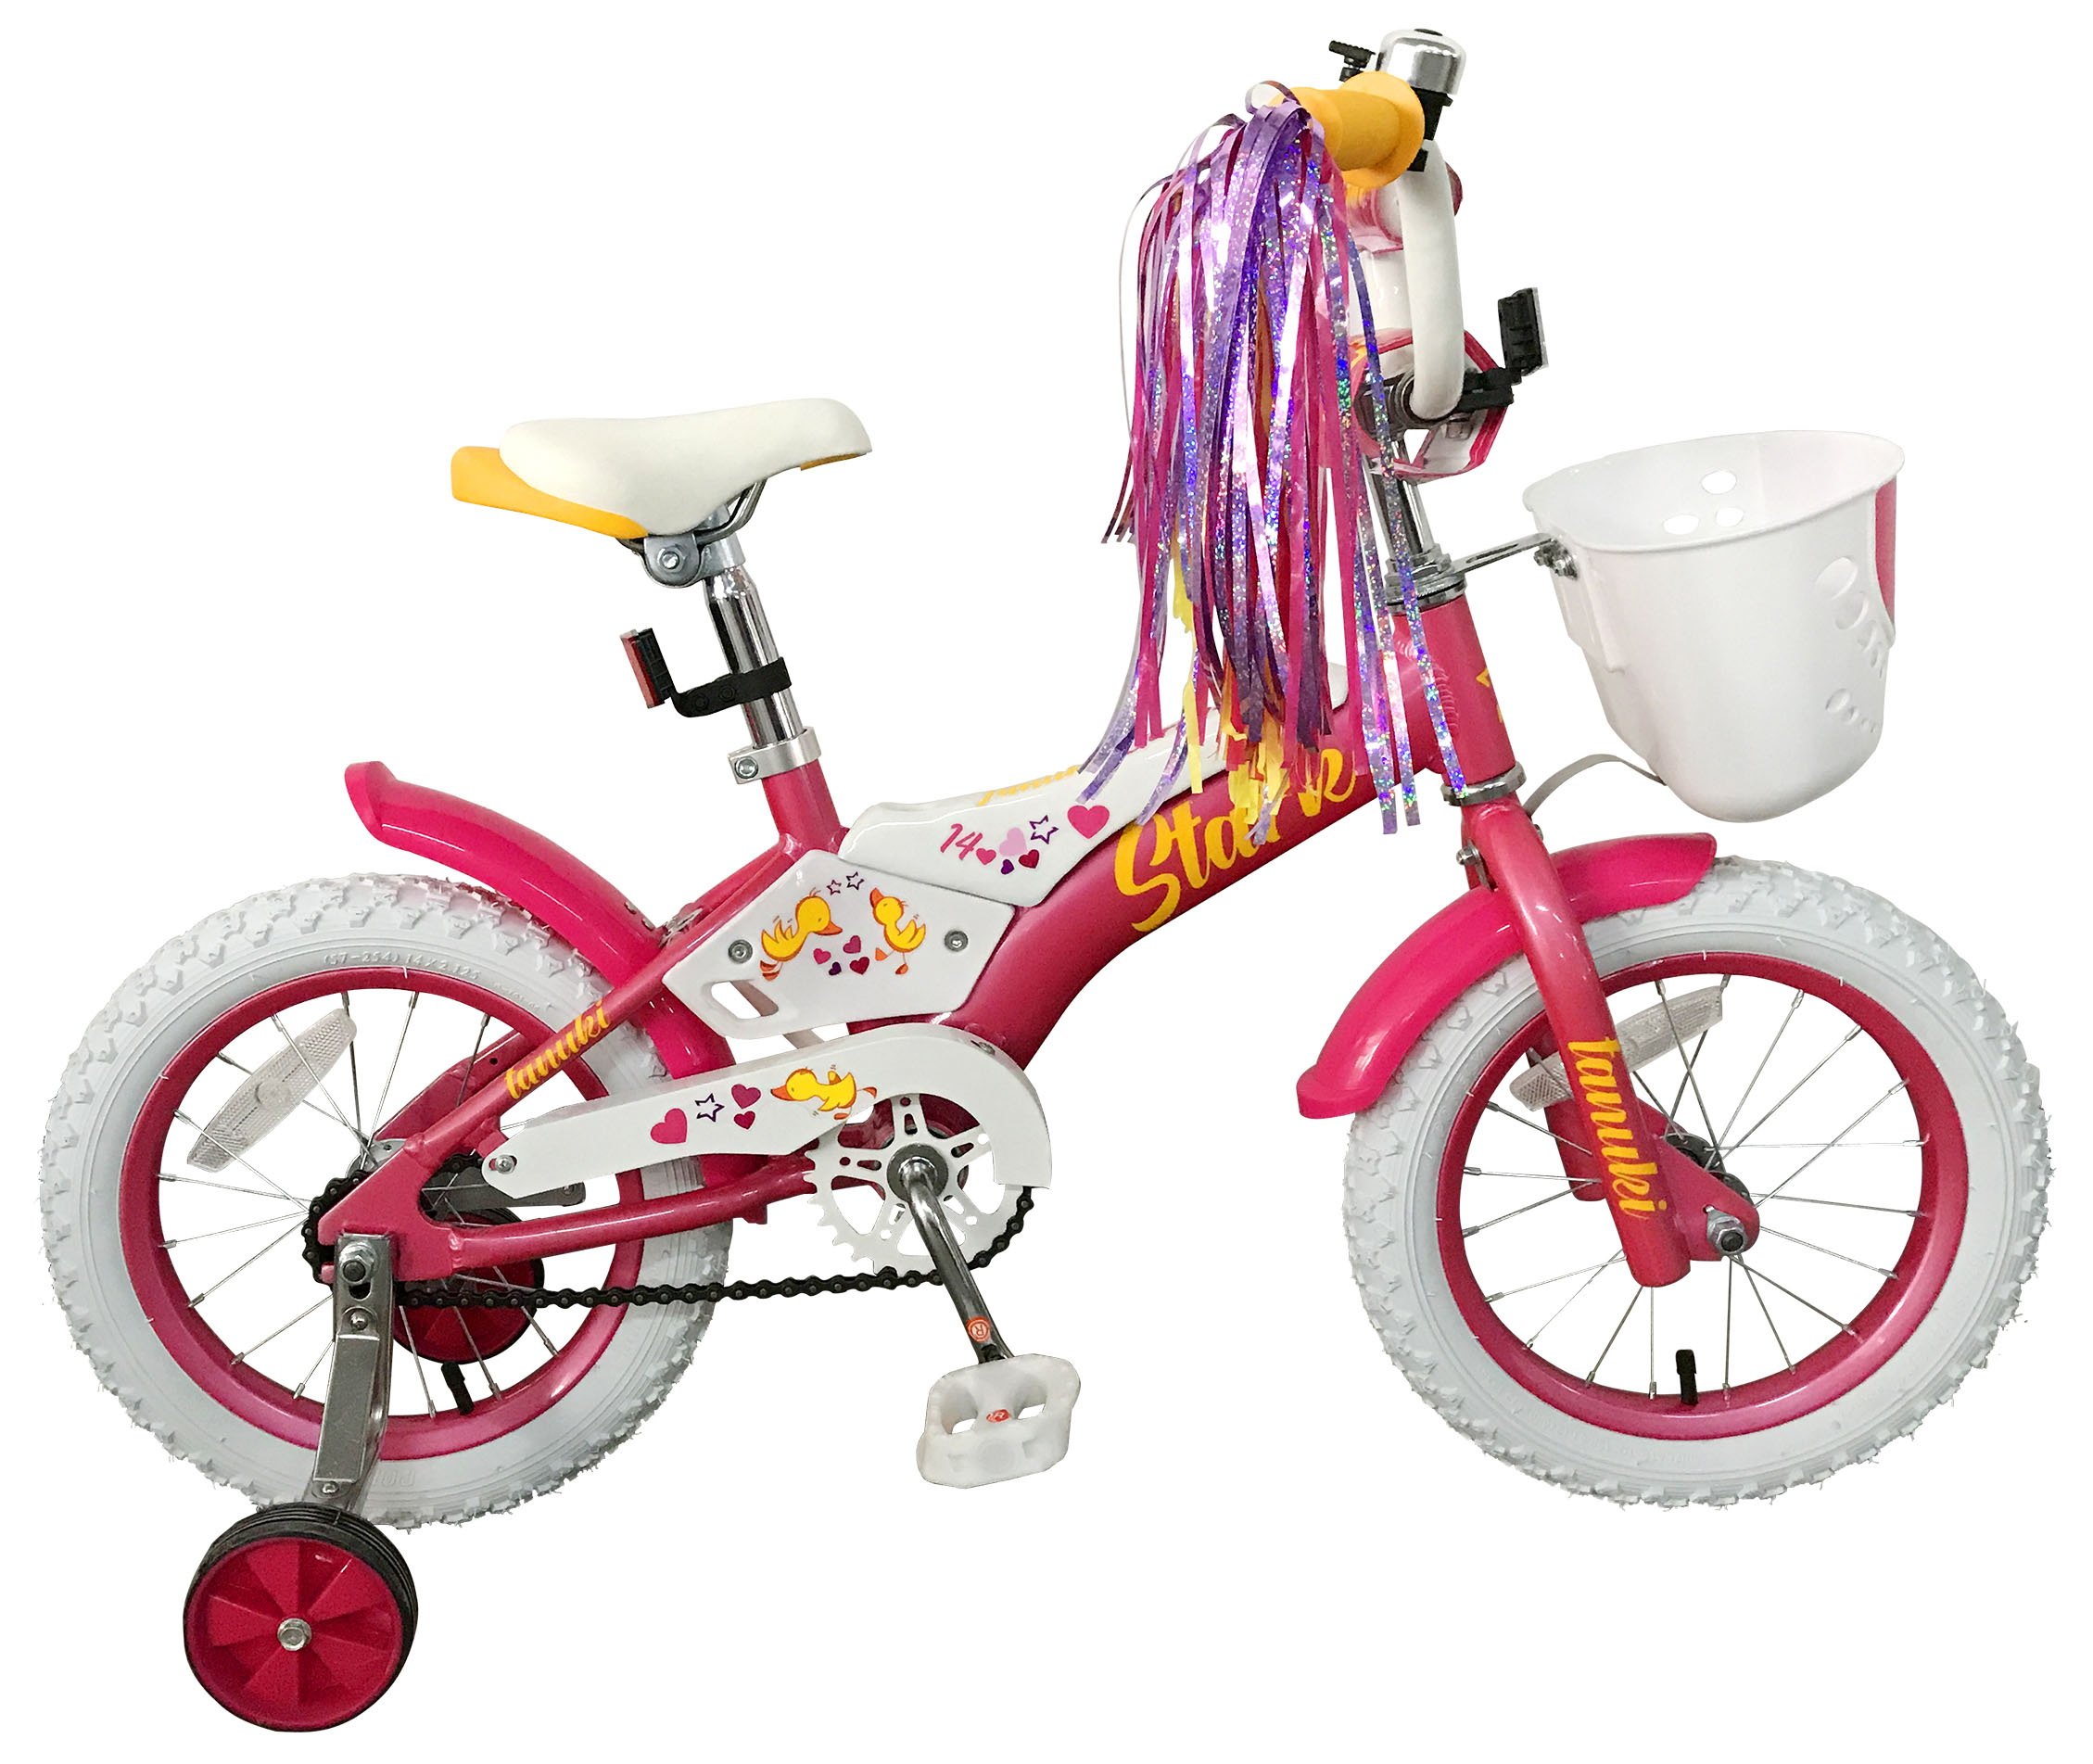  Отзывы о Детском велосипеде Stark Tanuki 14 Girl 2019